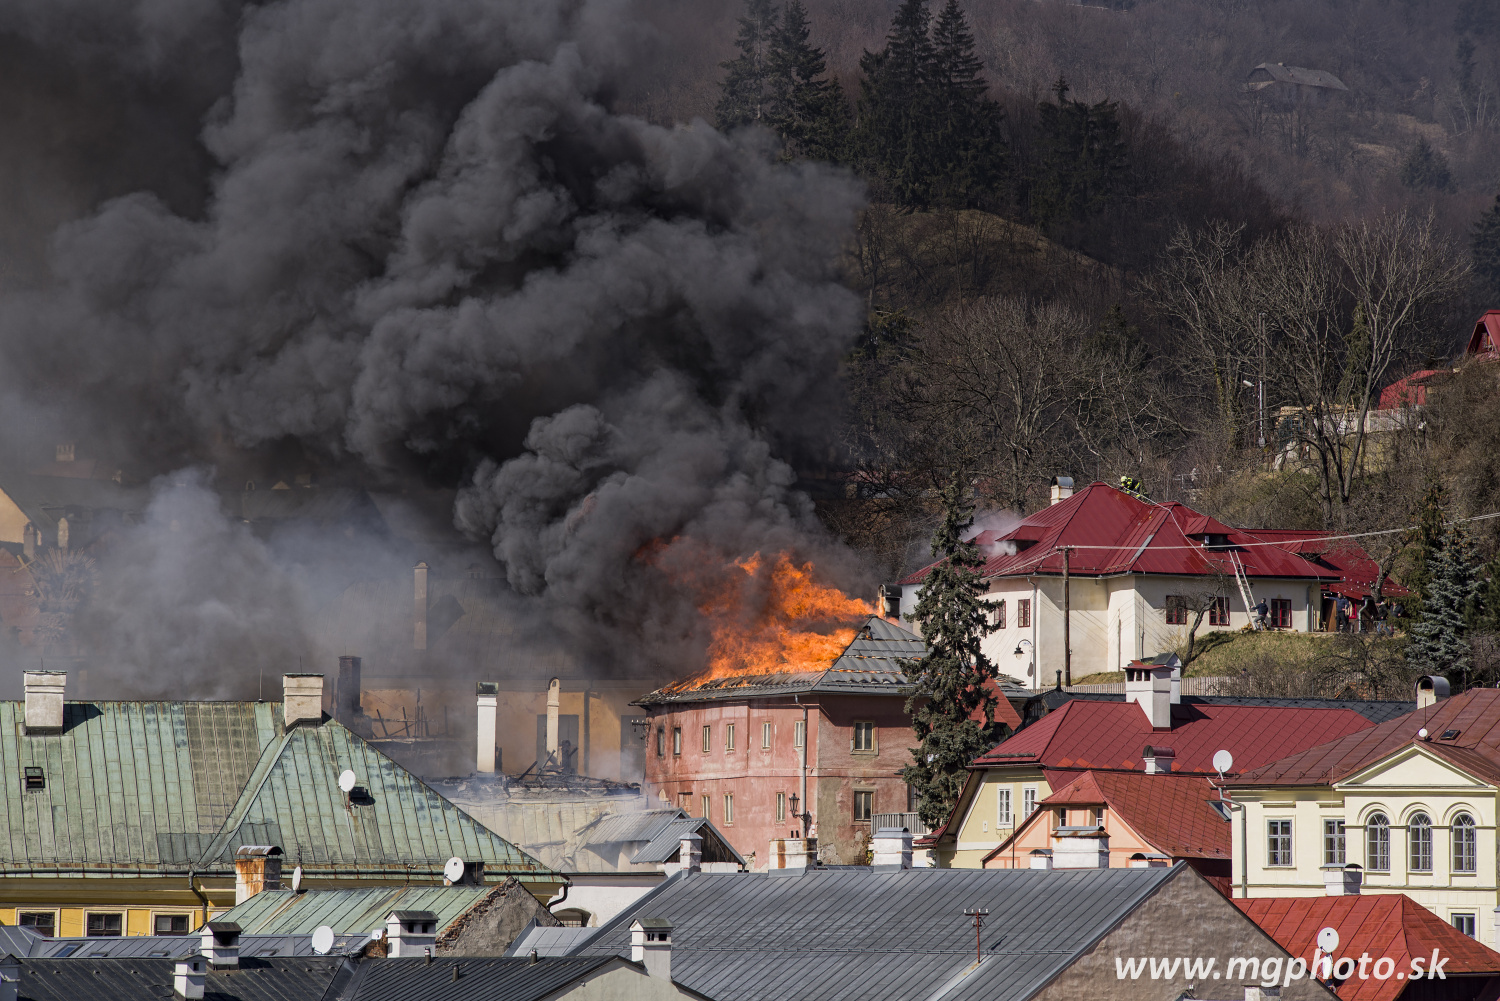 Rozsiahly požiar v Banskej Štiavnici zasiahol v rôznom rozsahu sedem budov v historickom centre mesta.